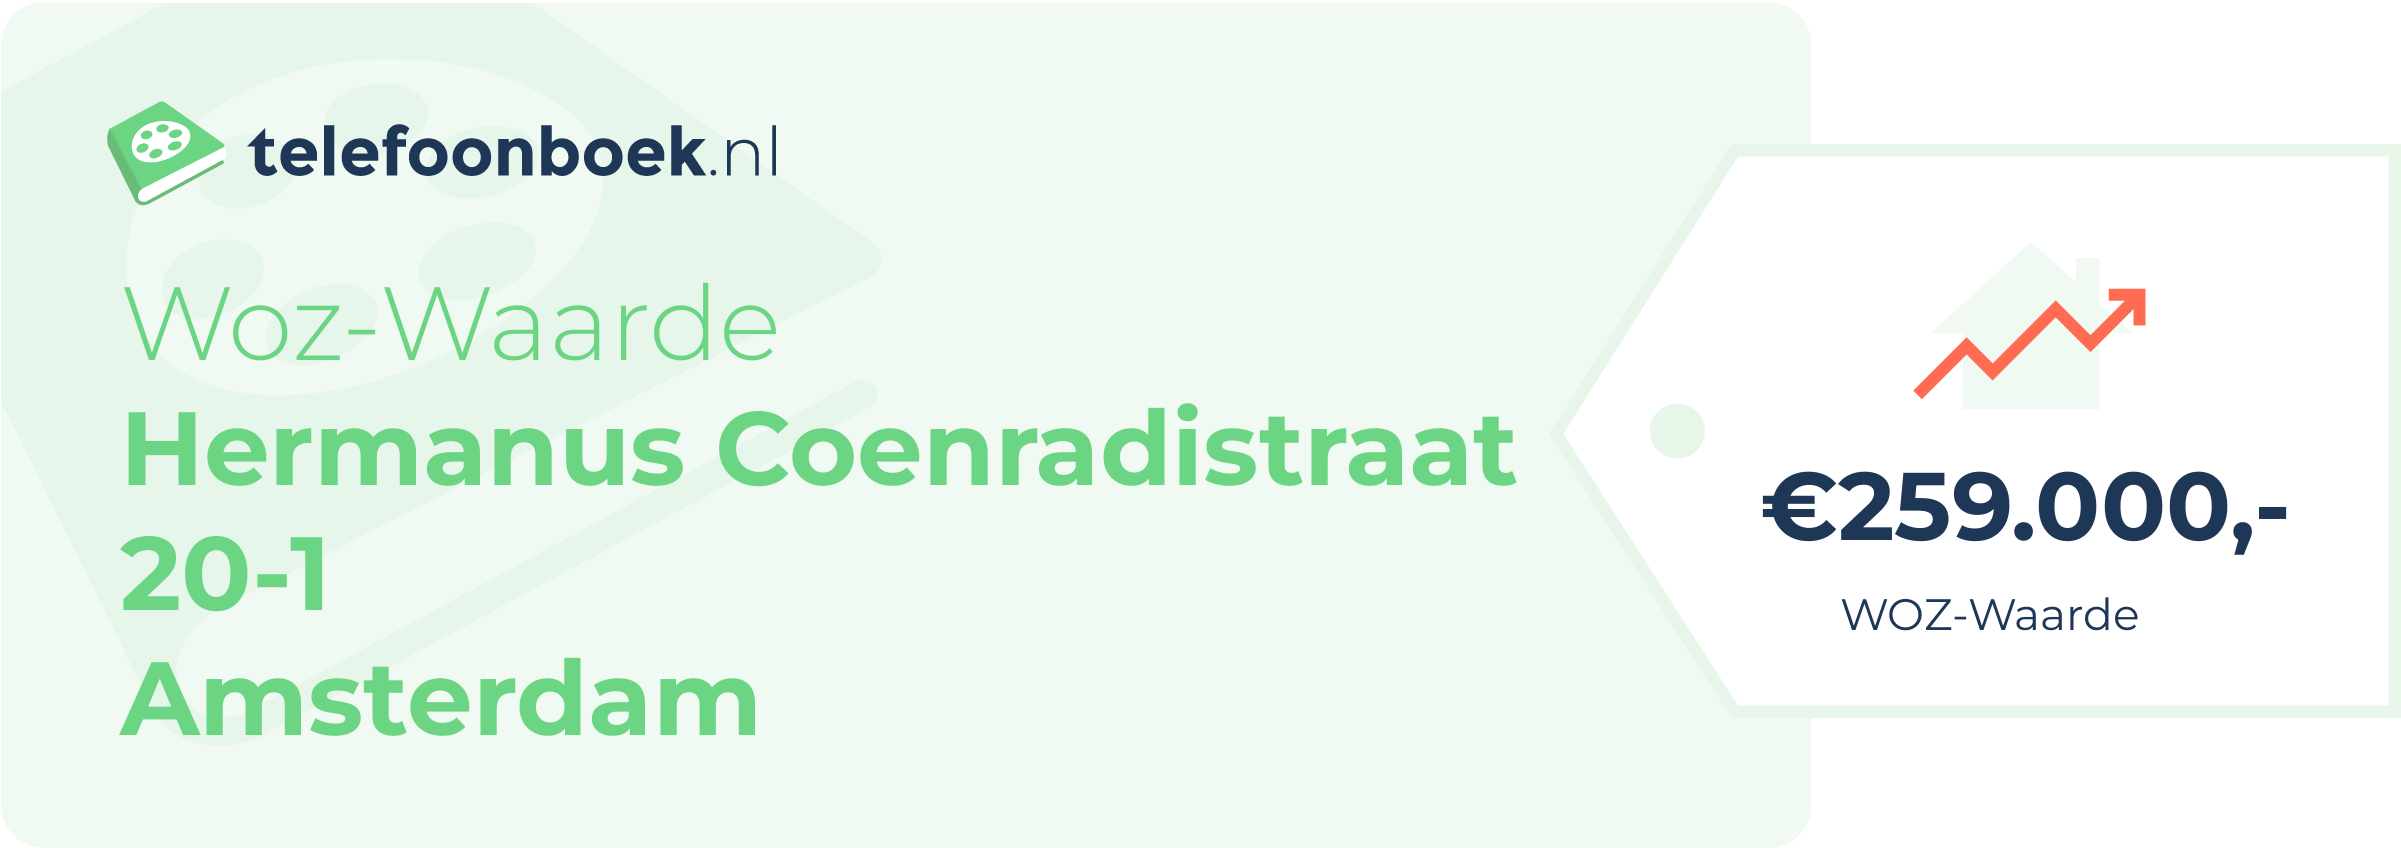 WOZ-waarde Hermanus Coenradistraat 20-1 Amsterdam